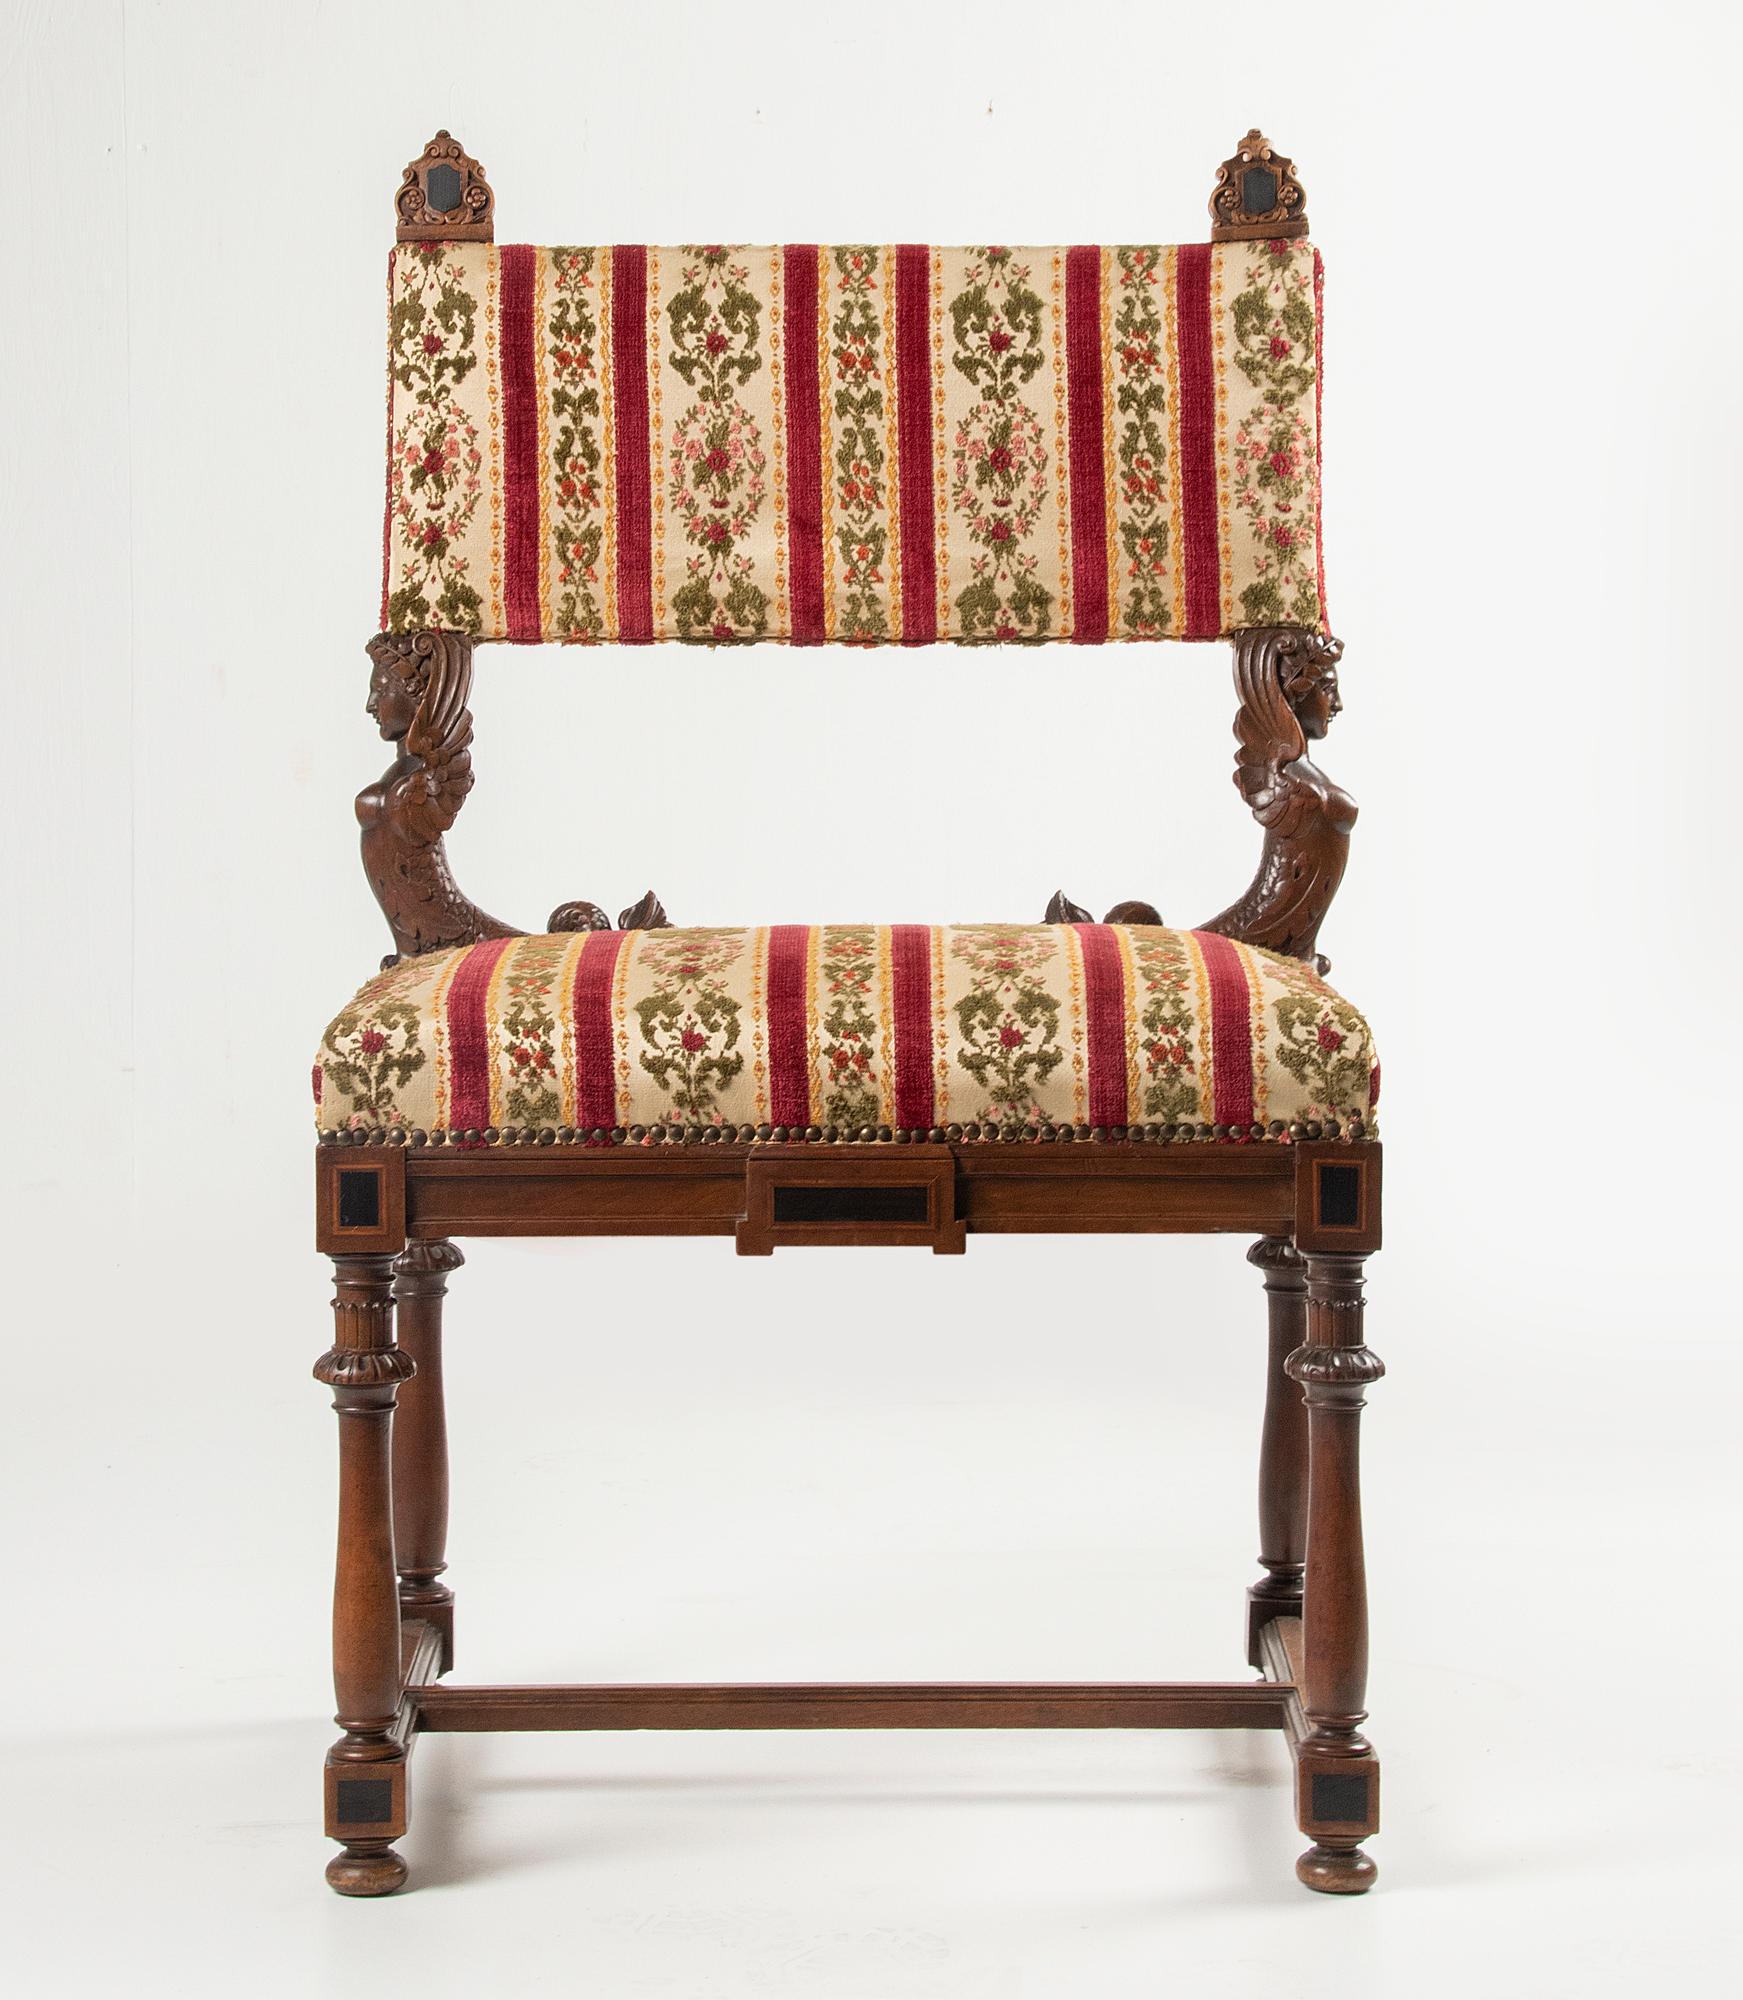 Une grande chaise ancienne de style Renaissance, également appelée style Henri II. La chaise est fabriquée en bois de noyer sculpté. Bois ébonisé et incrustation sur les coins et les ornements supérieurs. Le dossier repose sur deux sirènes sculptées